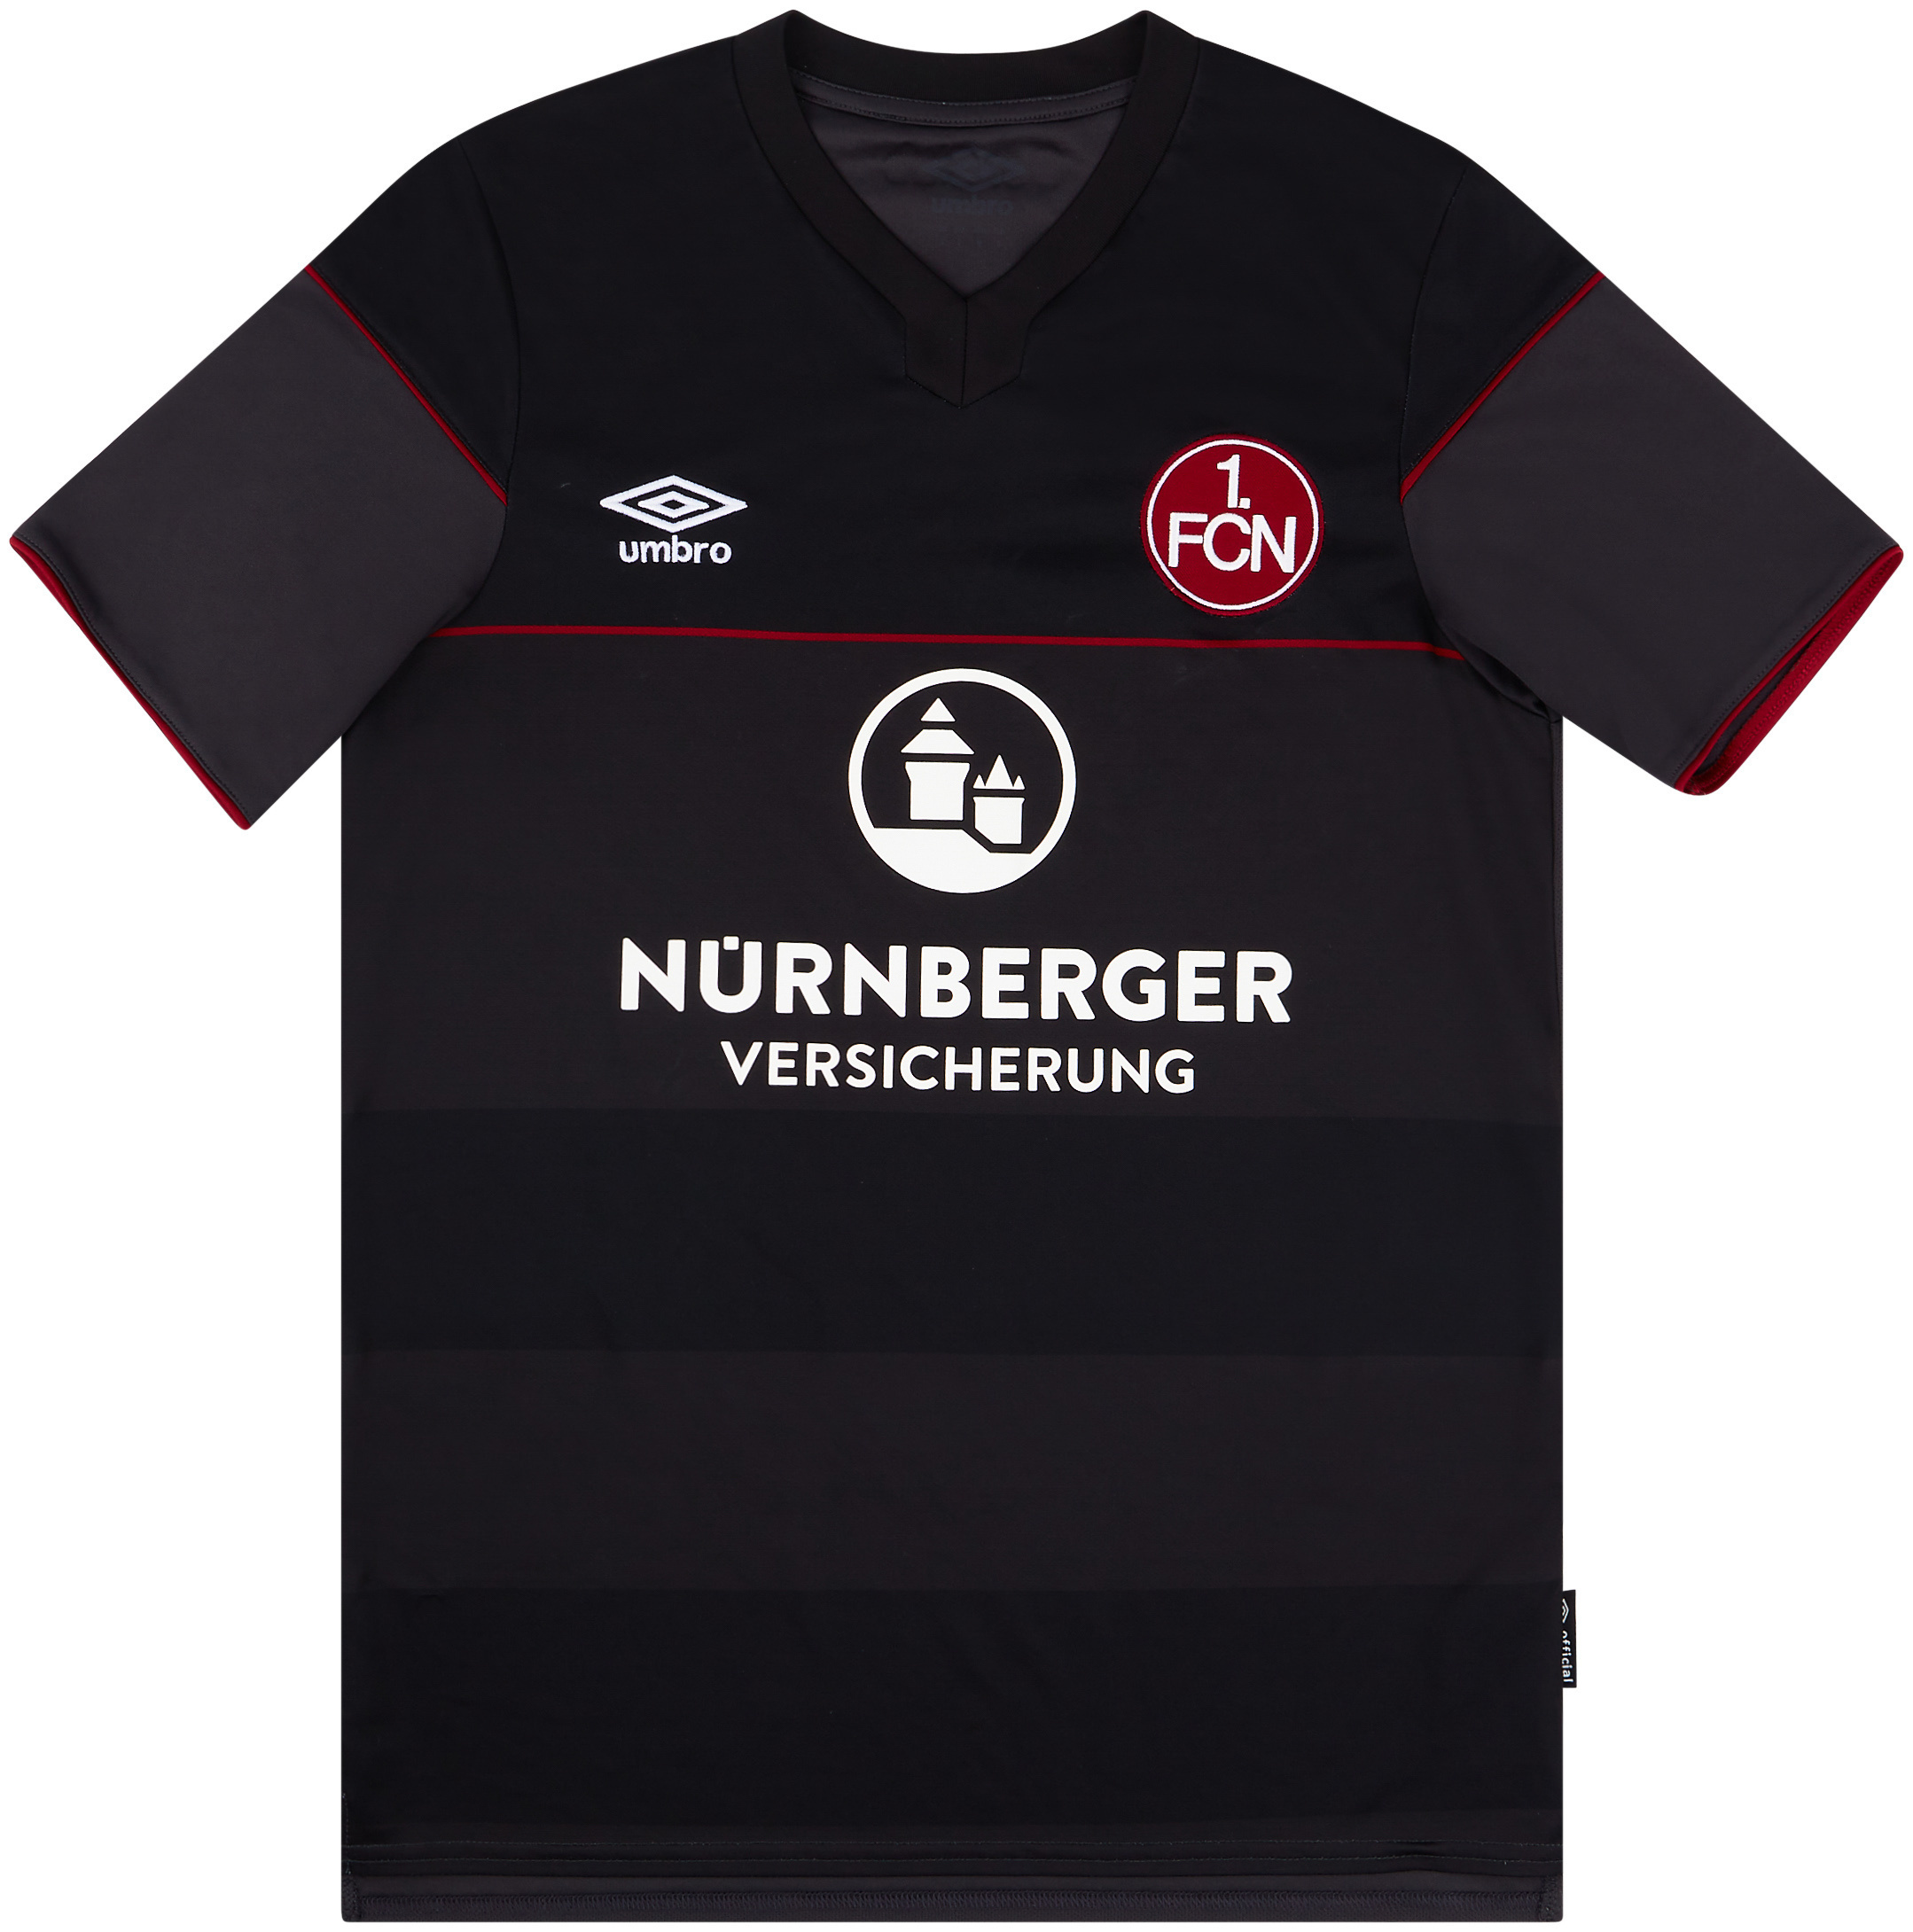 Nurnberg  Terceira camisa (Original)